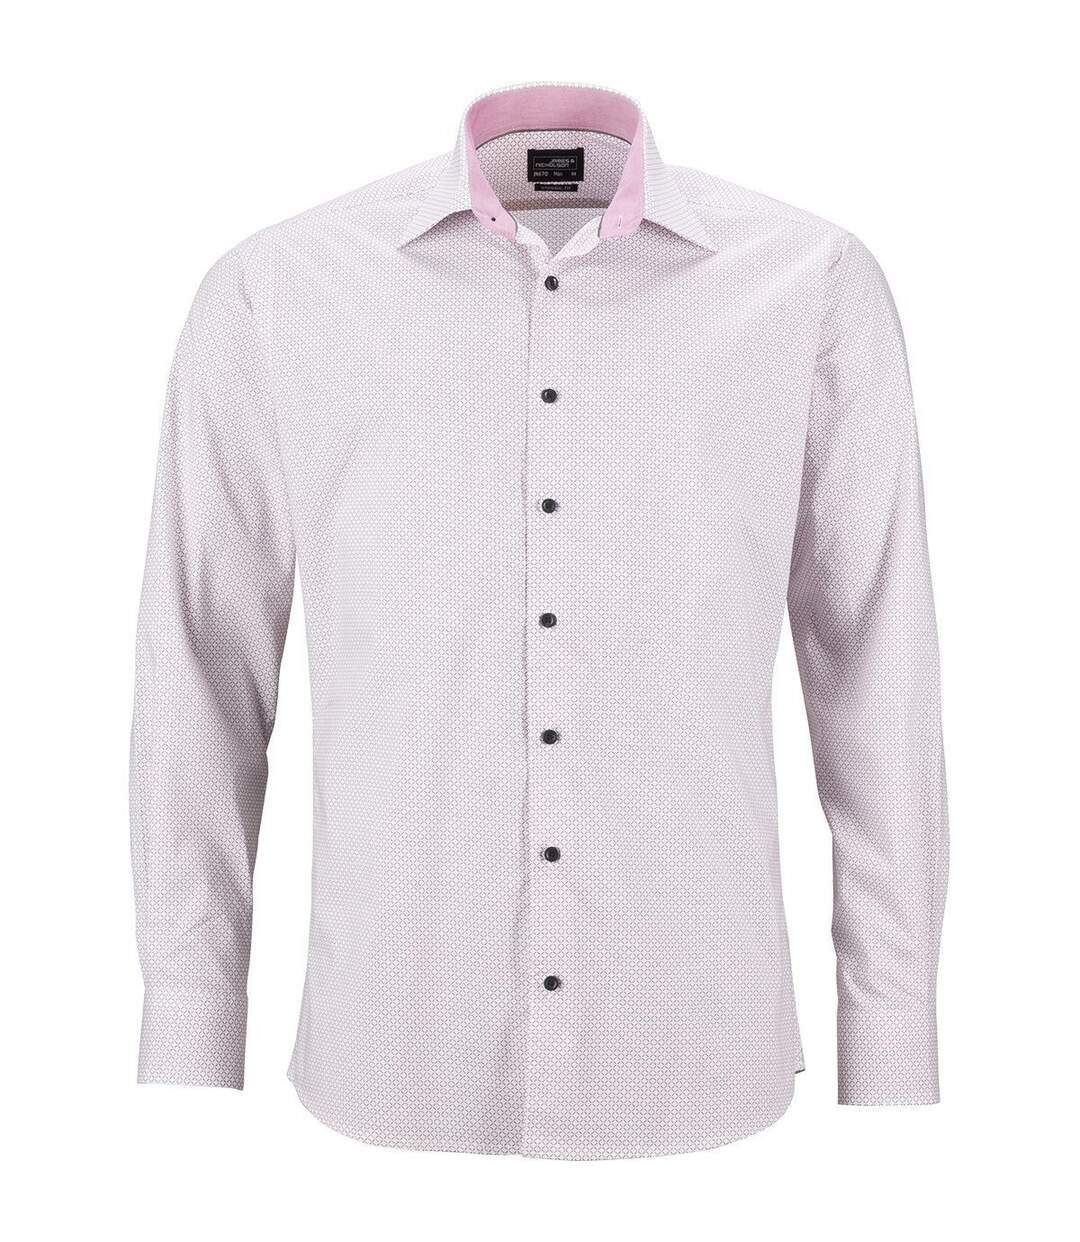 chemise manches longues - JN670 - HOMME - blanc - rouge - motifs fins